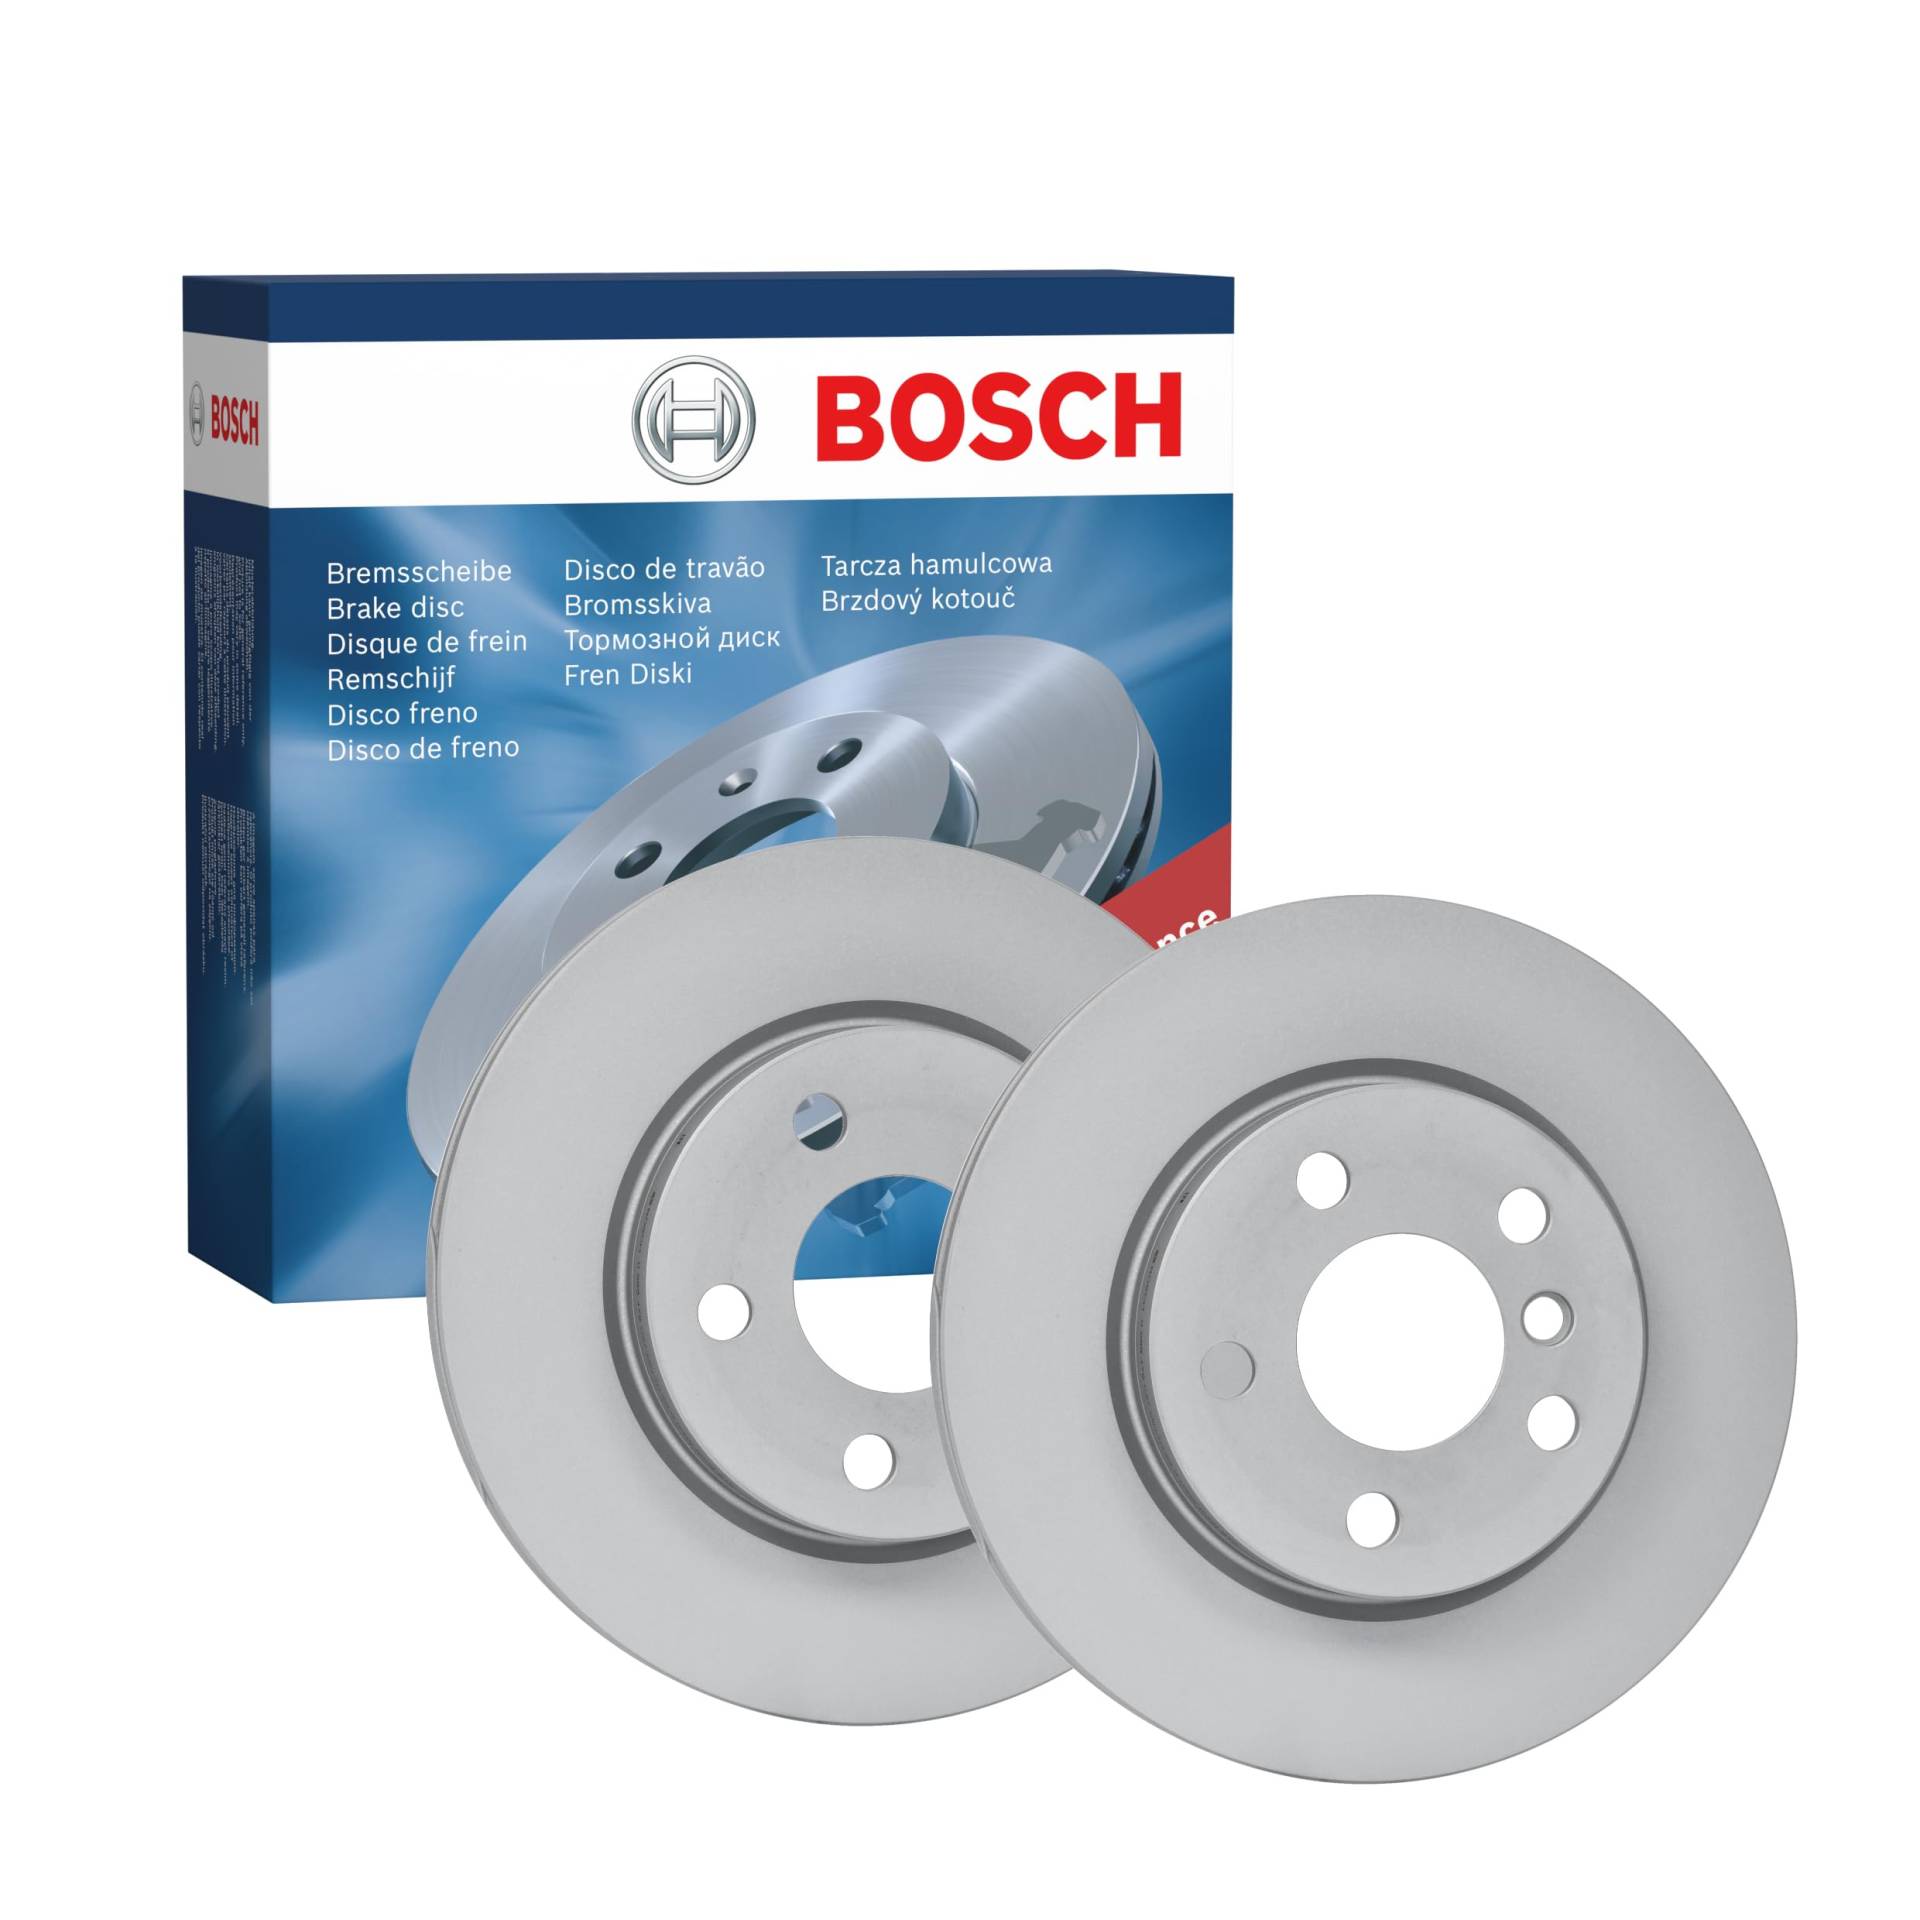 Bosch BD2418 Bremsscheiben - Vorderachse - ECE-R90 Zertifizierung - zwei Bremsscheiben pro Set von Bosch Automotive